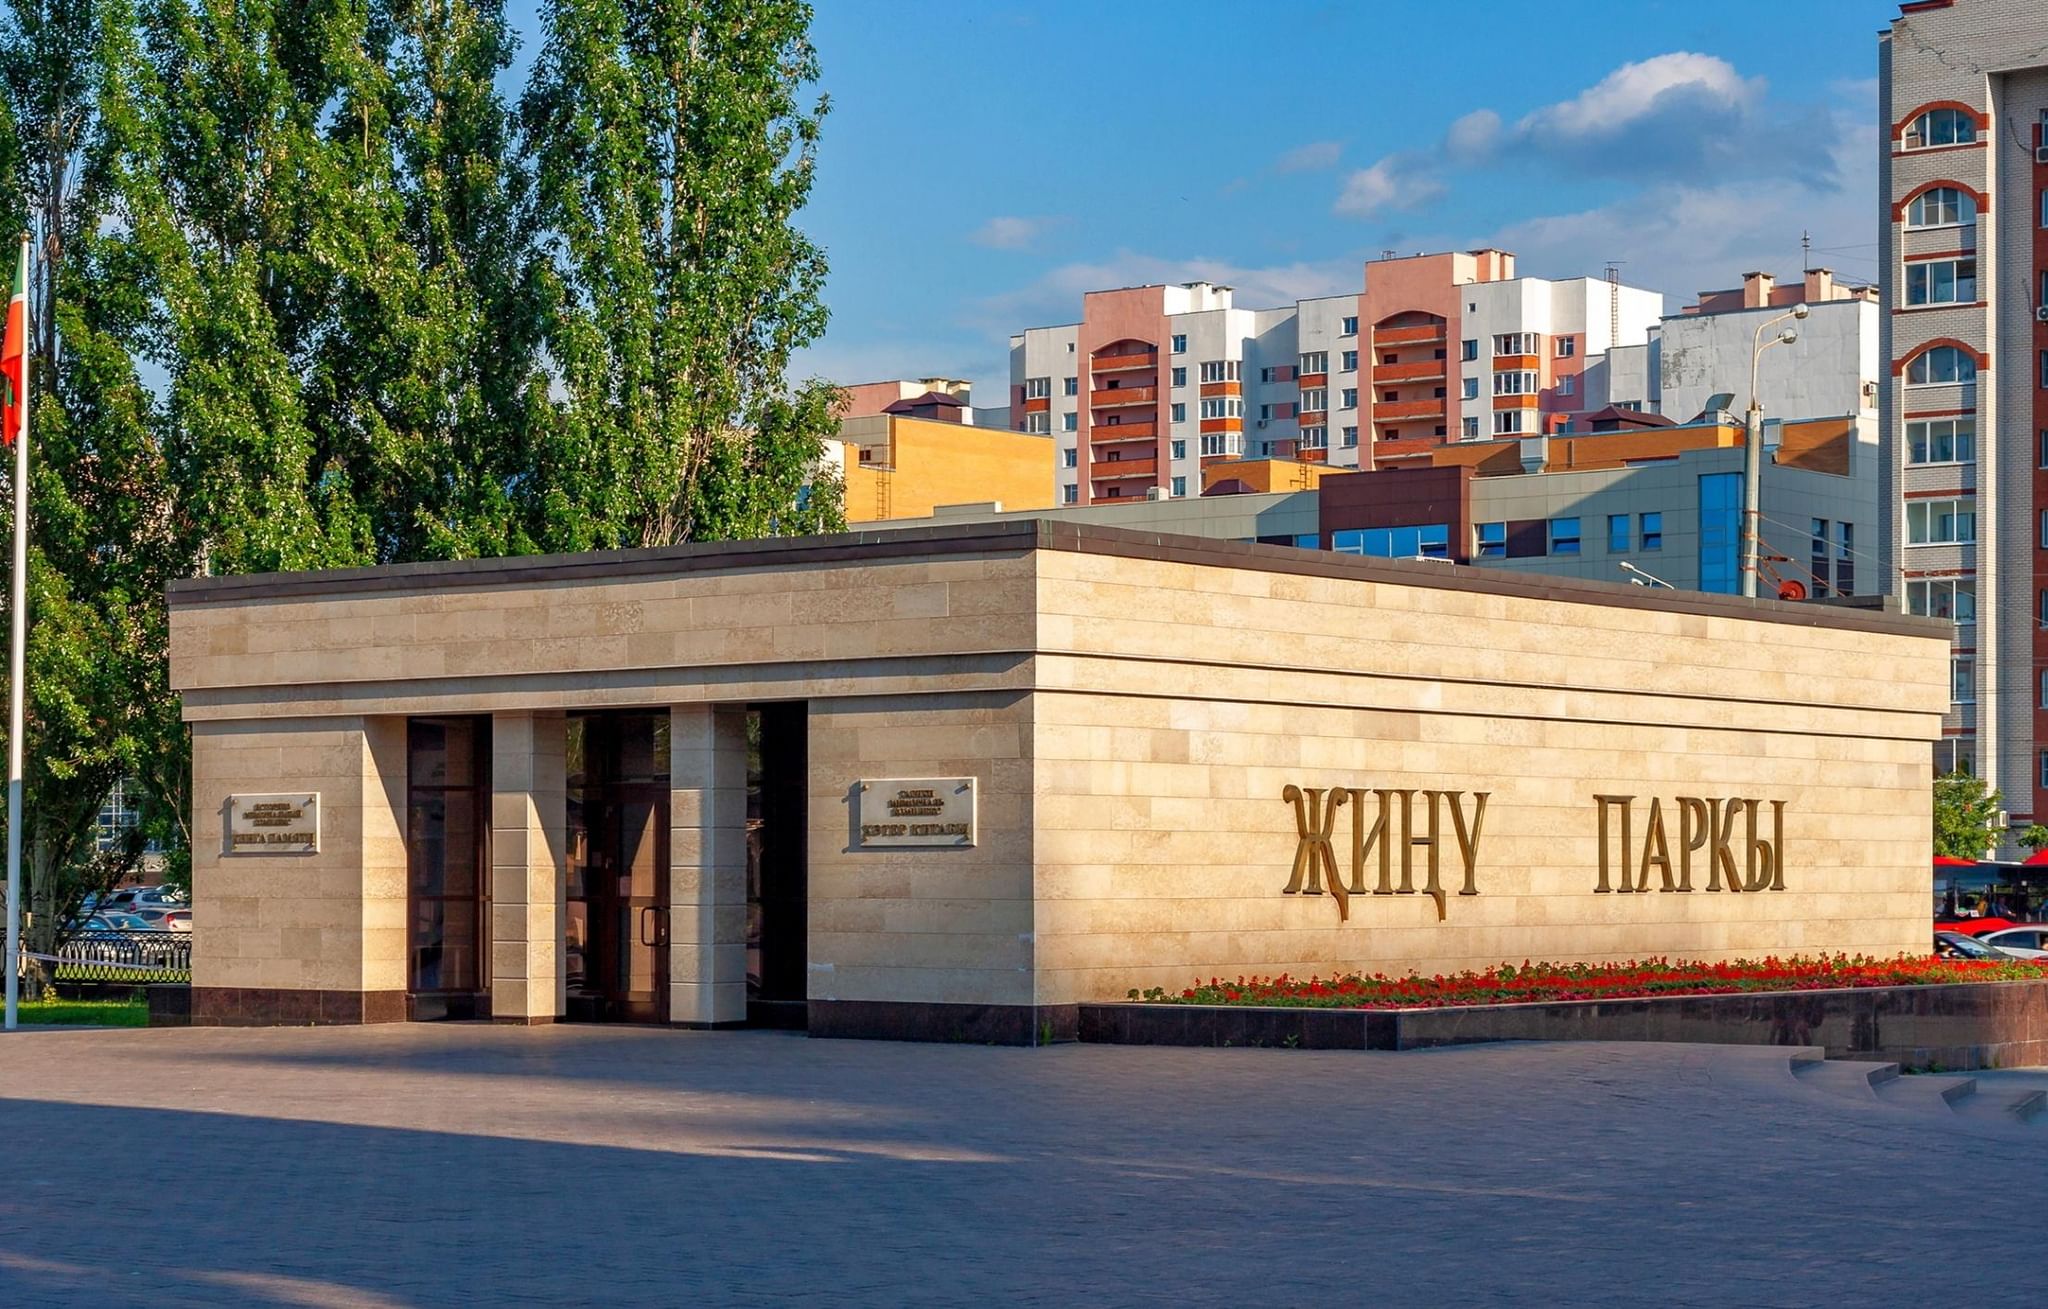 МБУК музейный комплекс города Казани